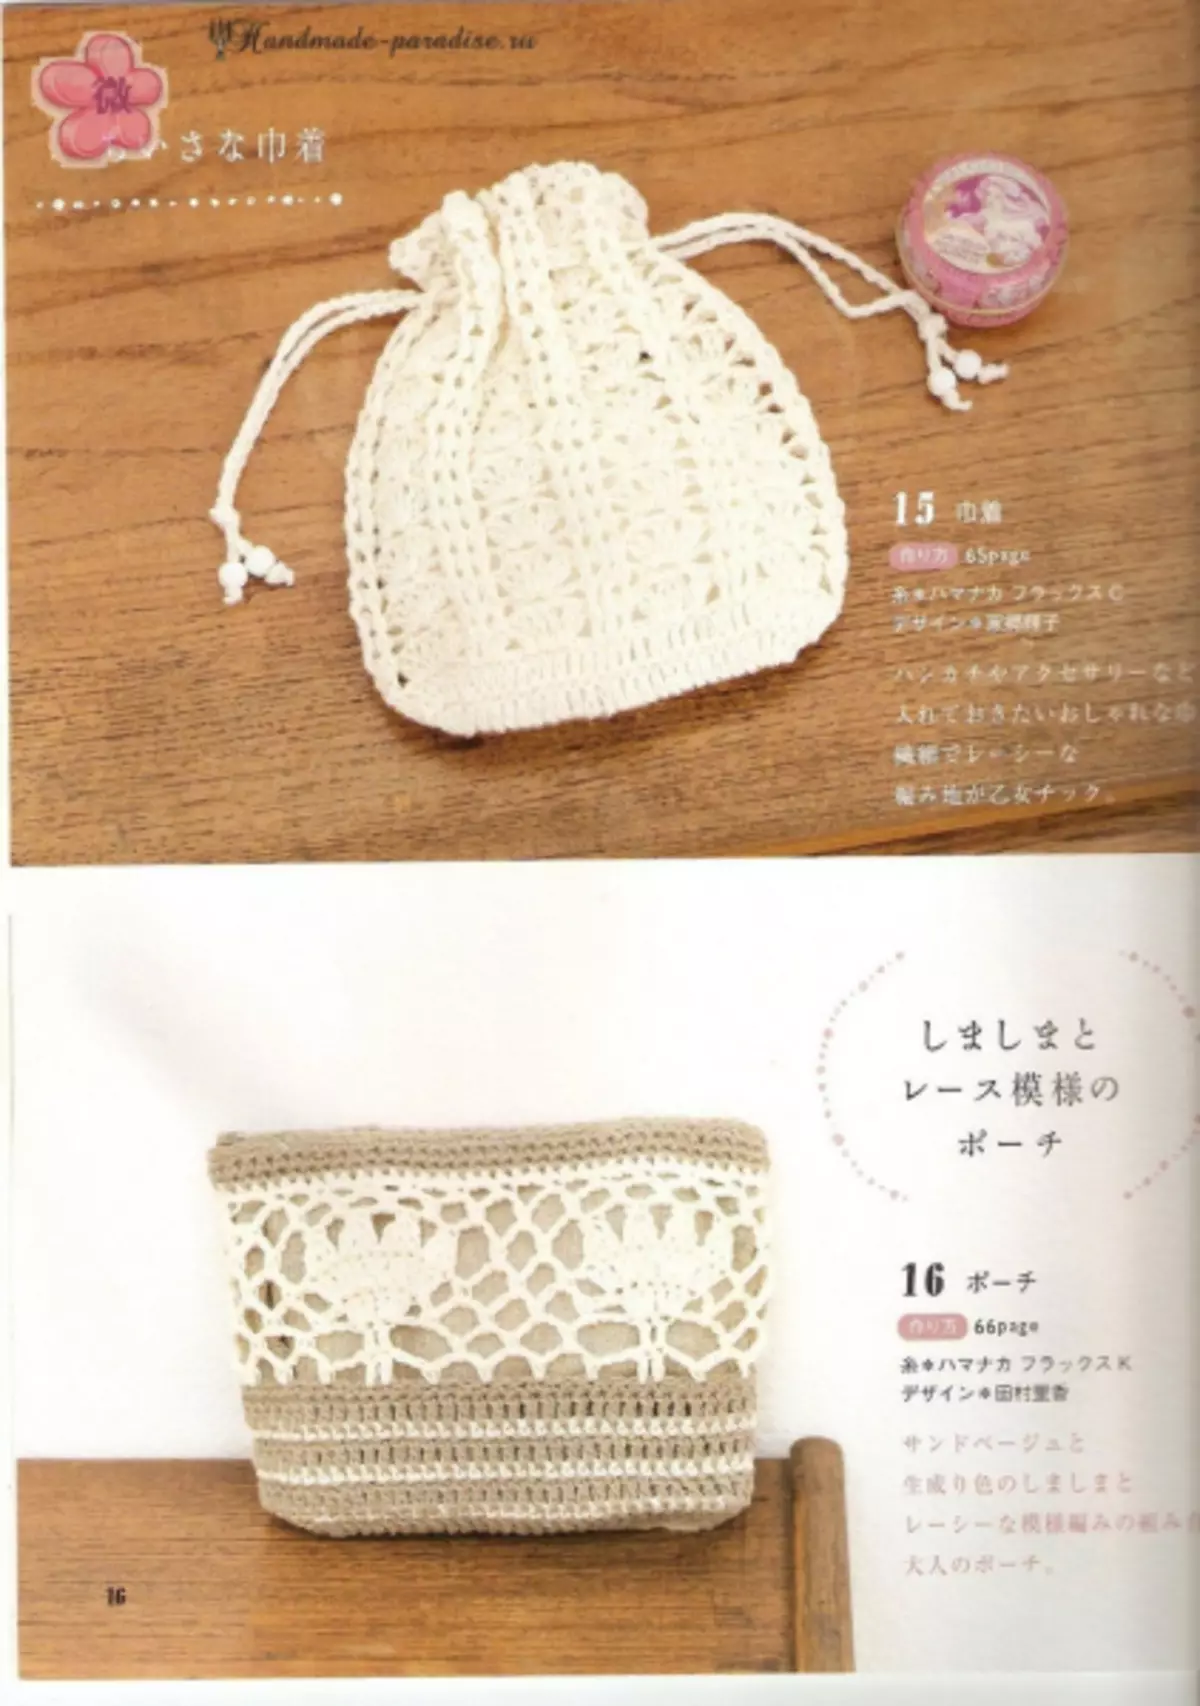 Chalk a Crochet Chilimwe. Magazini yaku Japan yokhala ndi mapulani